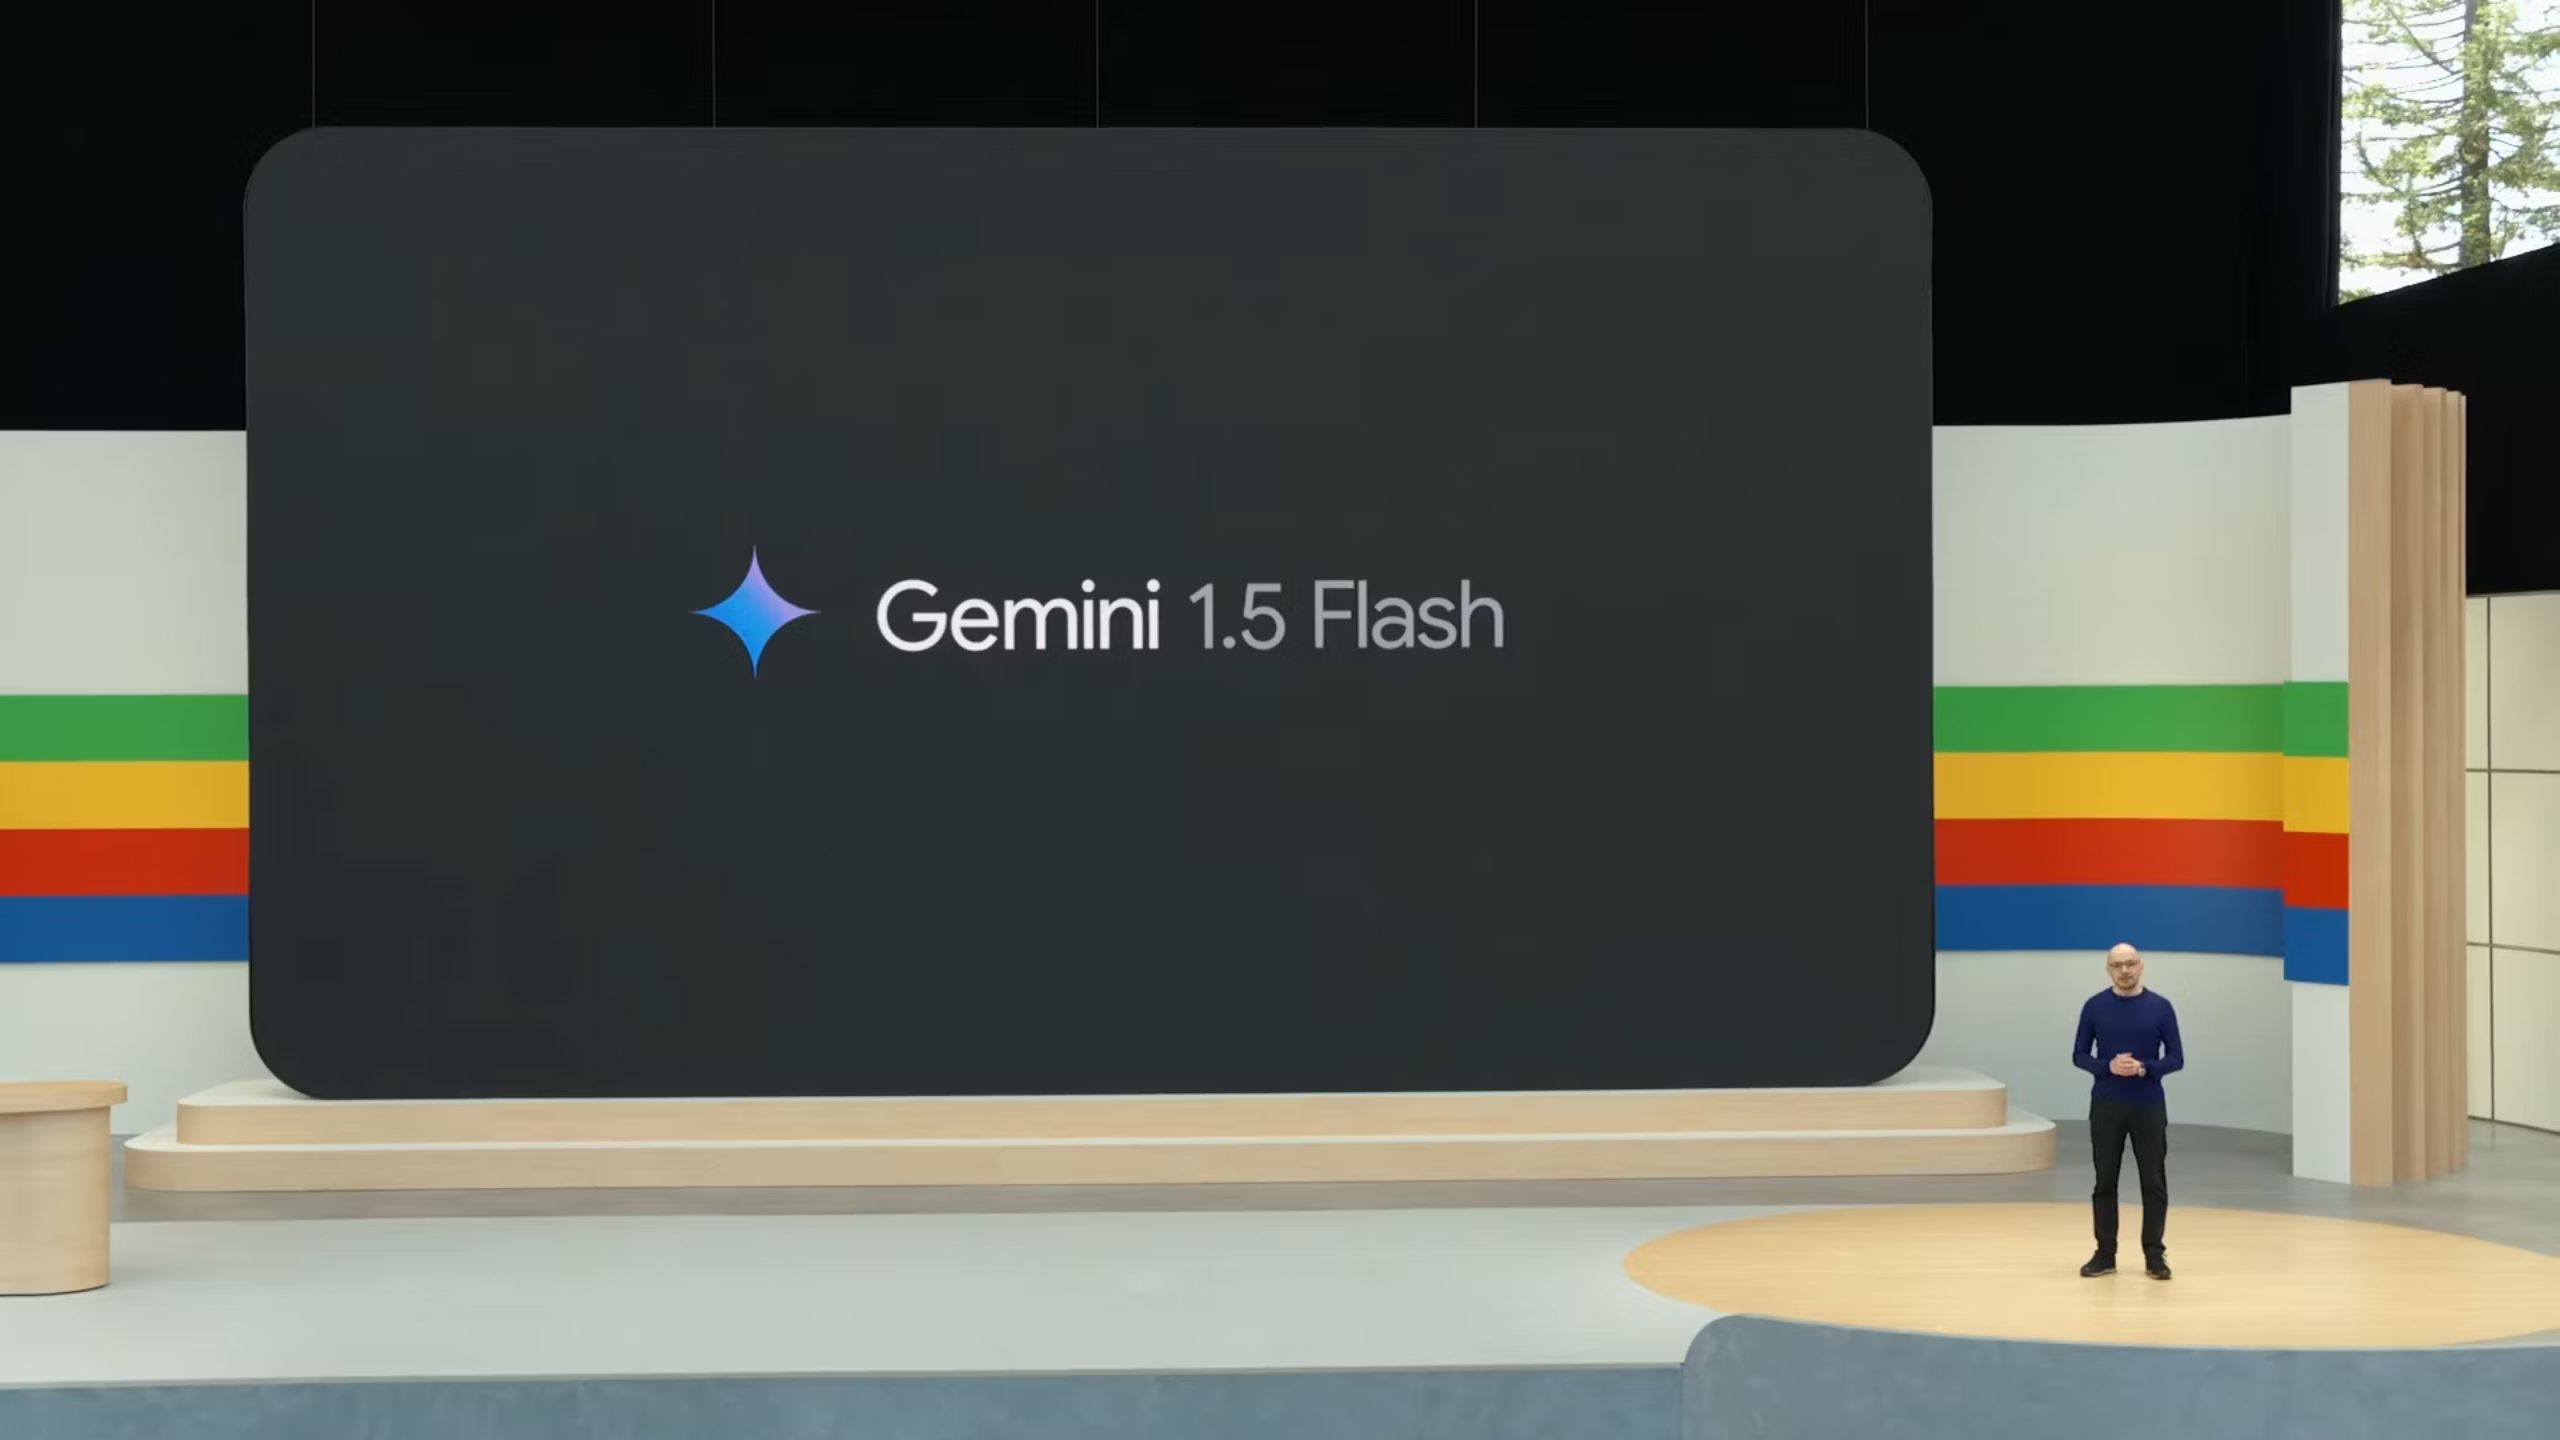 Gemini 1.5 Flash keynote presentation. 